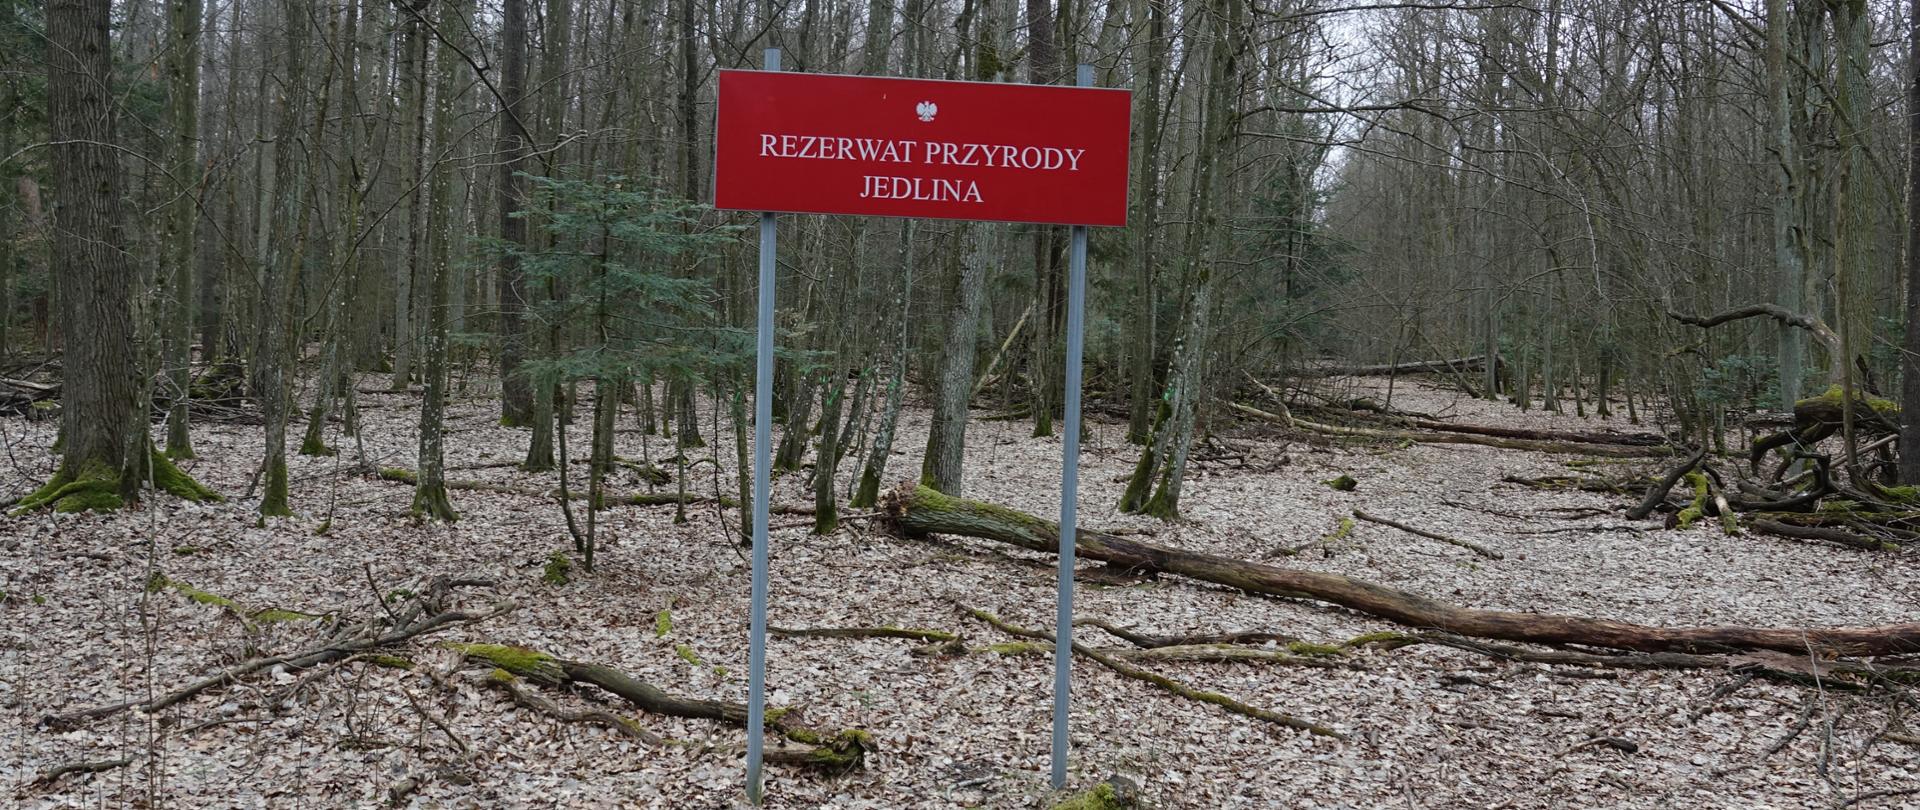 Na pierwszym planie tablica urzędowa z nazwą rezerwatu, w tle las i powalone drzewa